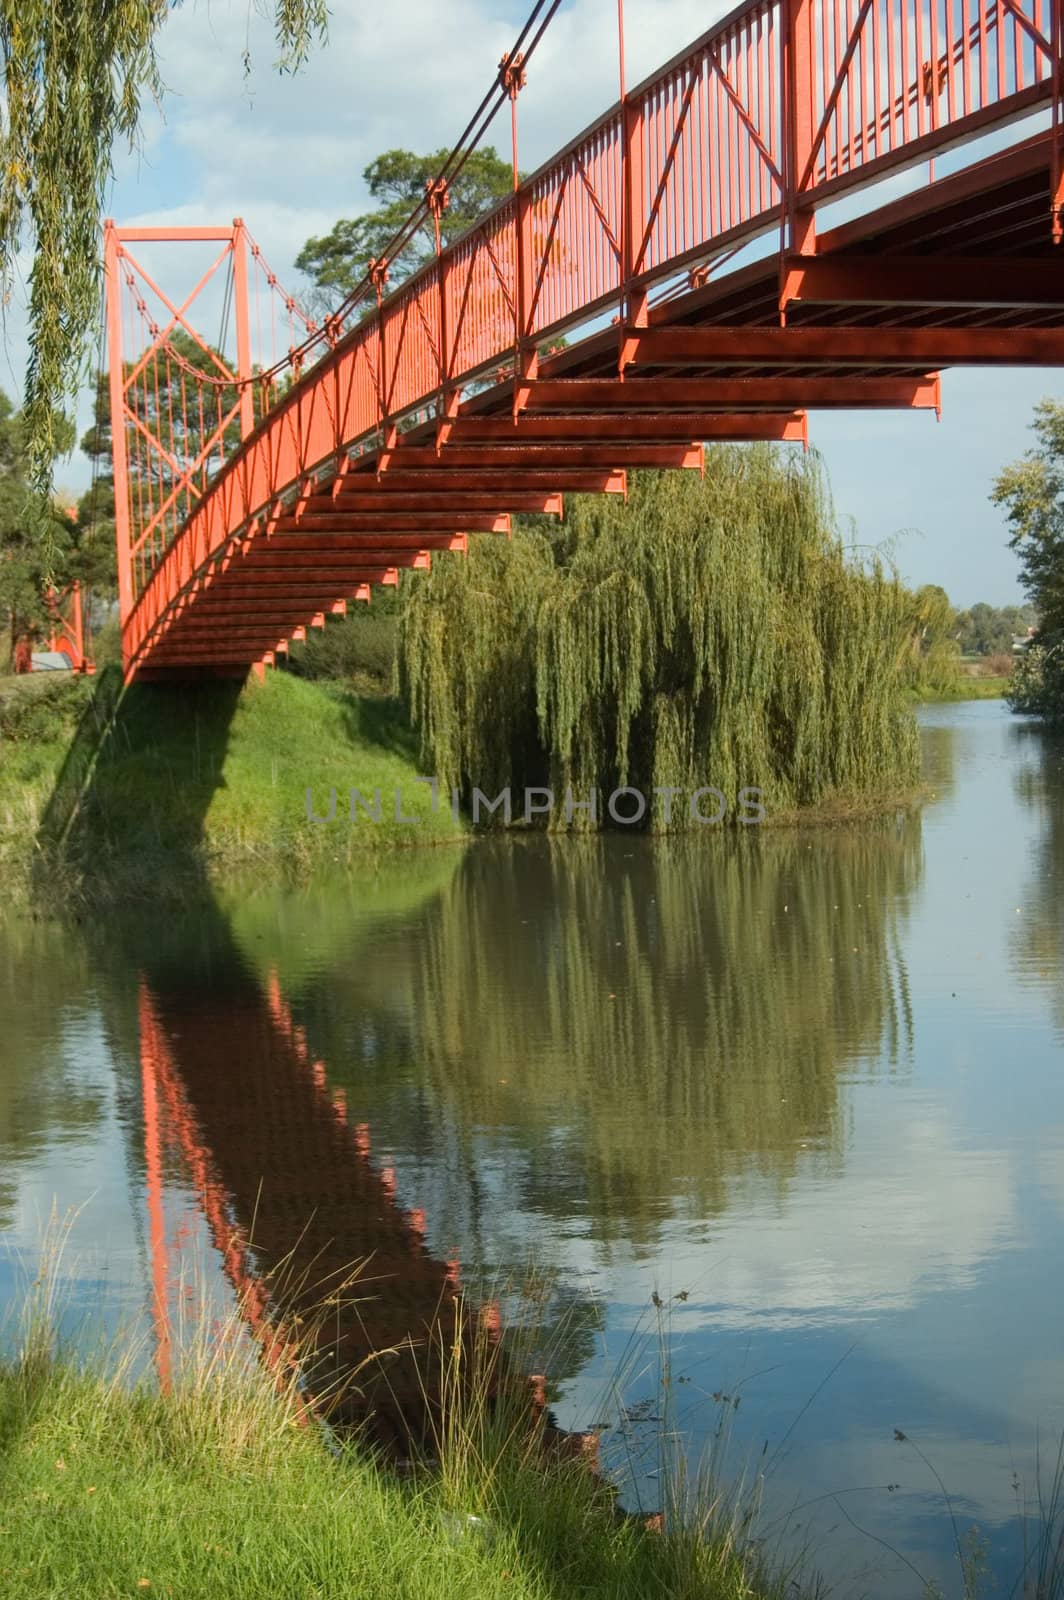 A Colourful Scenic Red Bridge over a River Photo